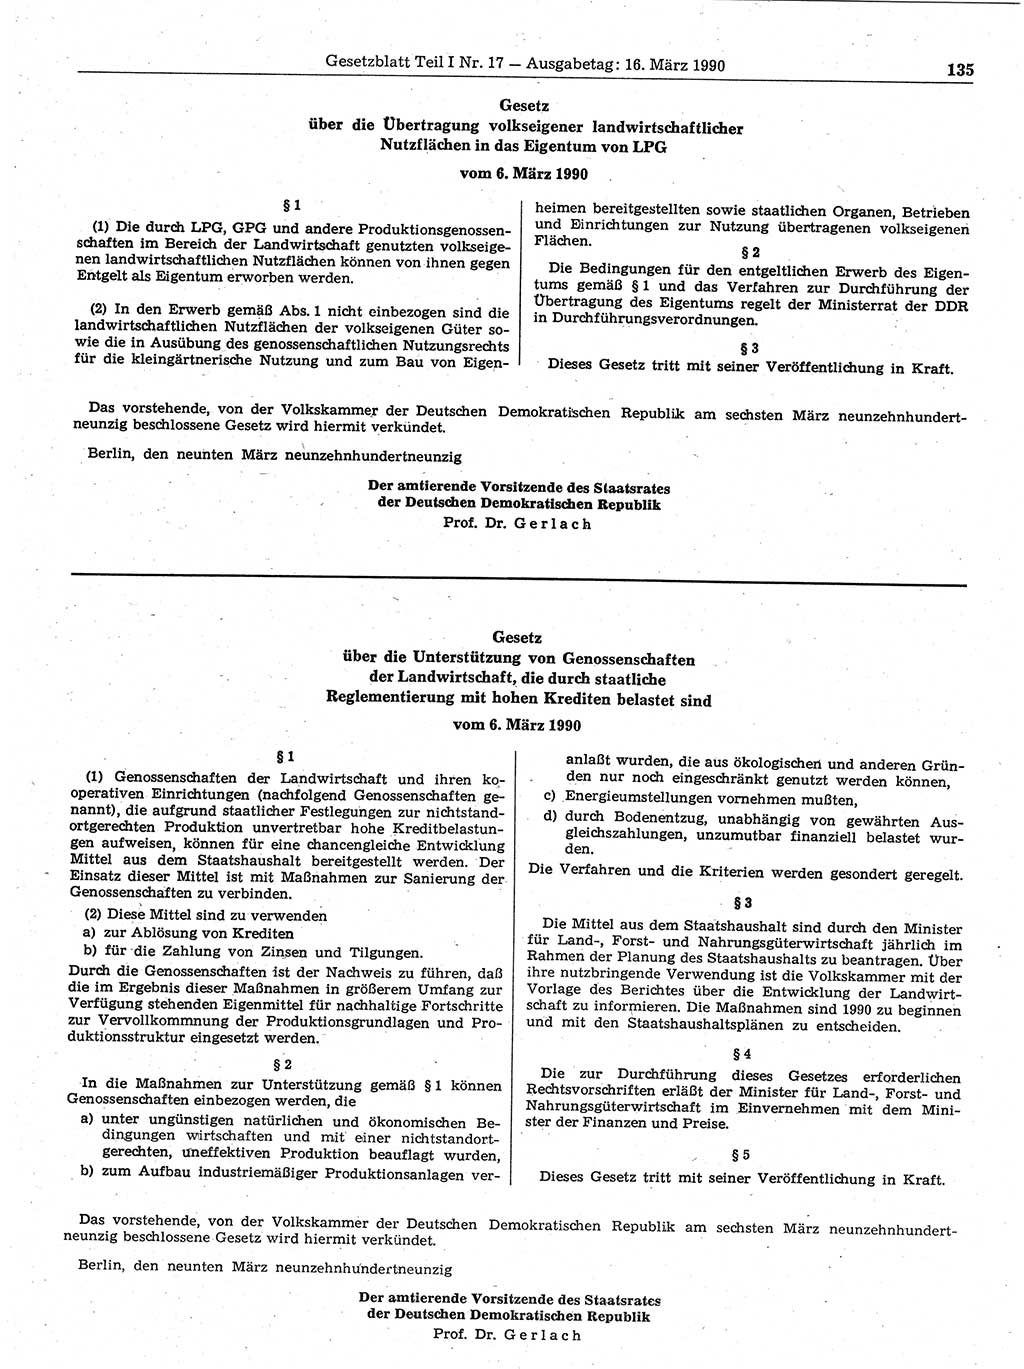 Gesetzblatt (GBl.) der Deutschen Demokratischen Republik (DDR) Teil Ⅰ 1990, Seite 135 (GBl. DDR Ⅰ 1990, S. 135)